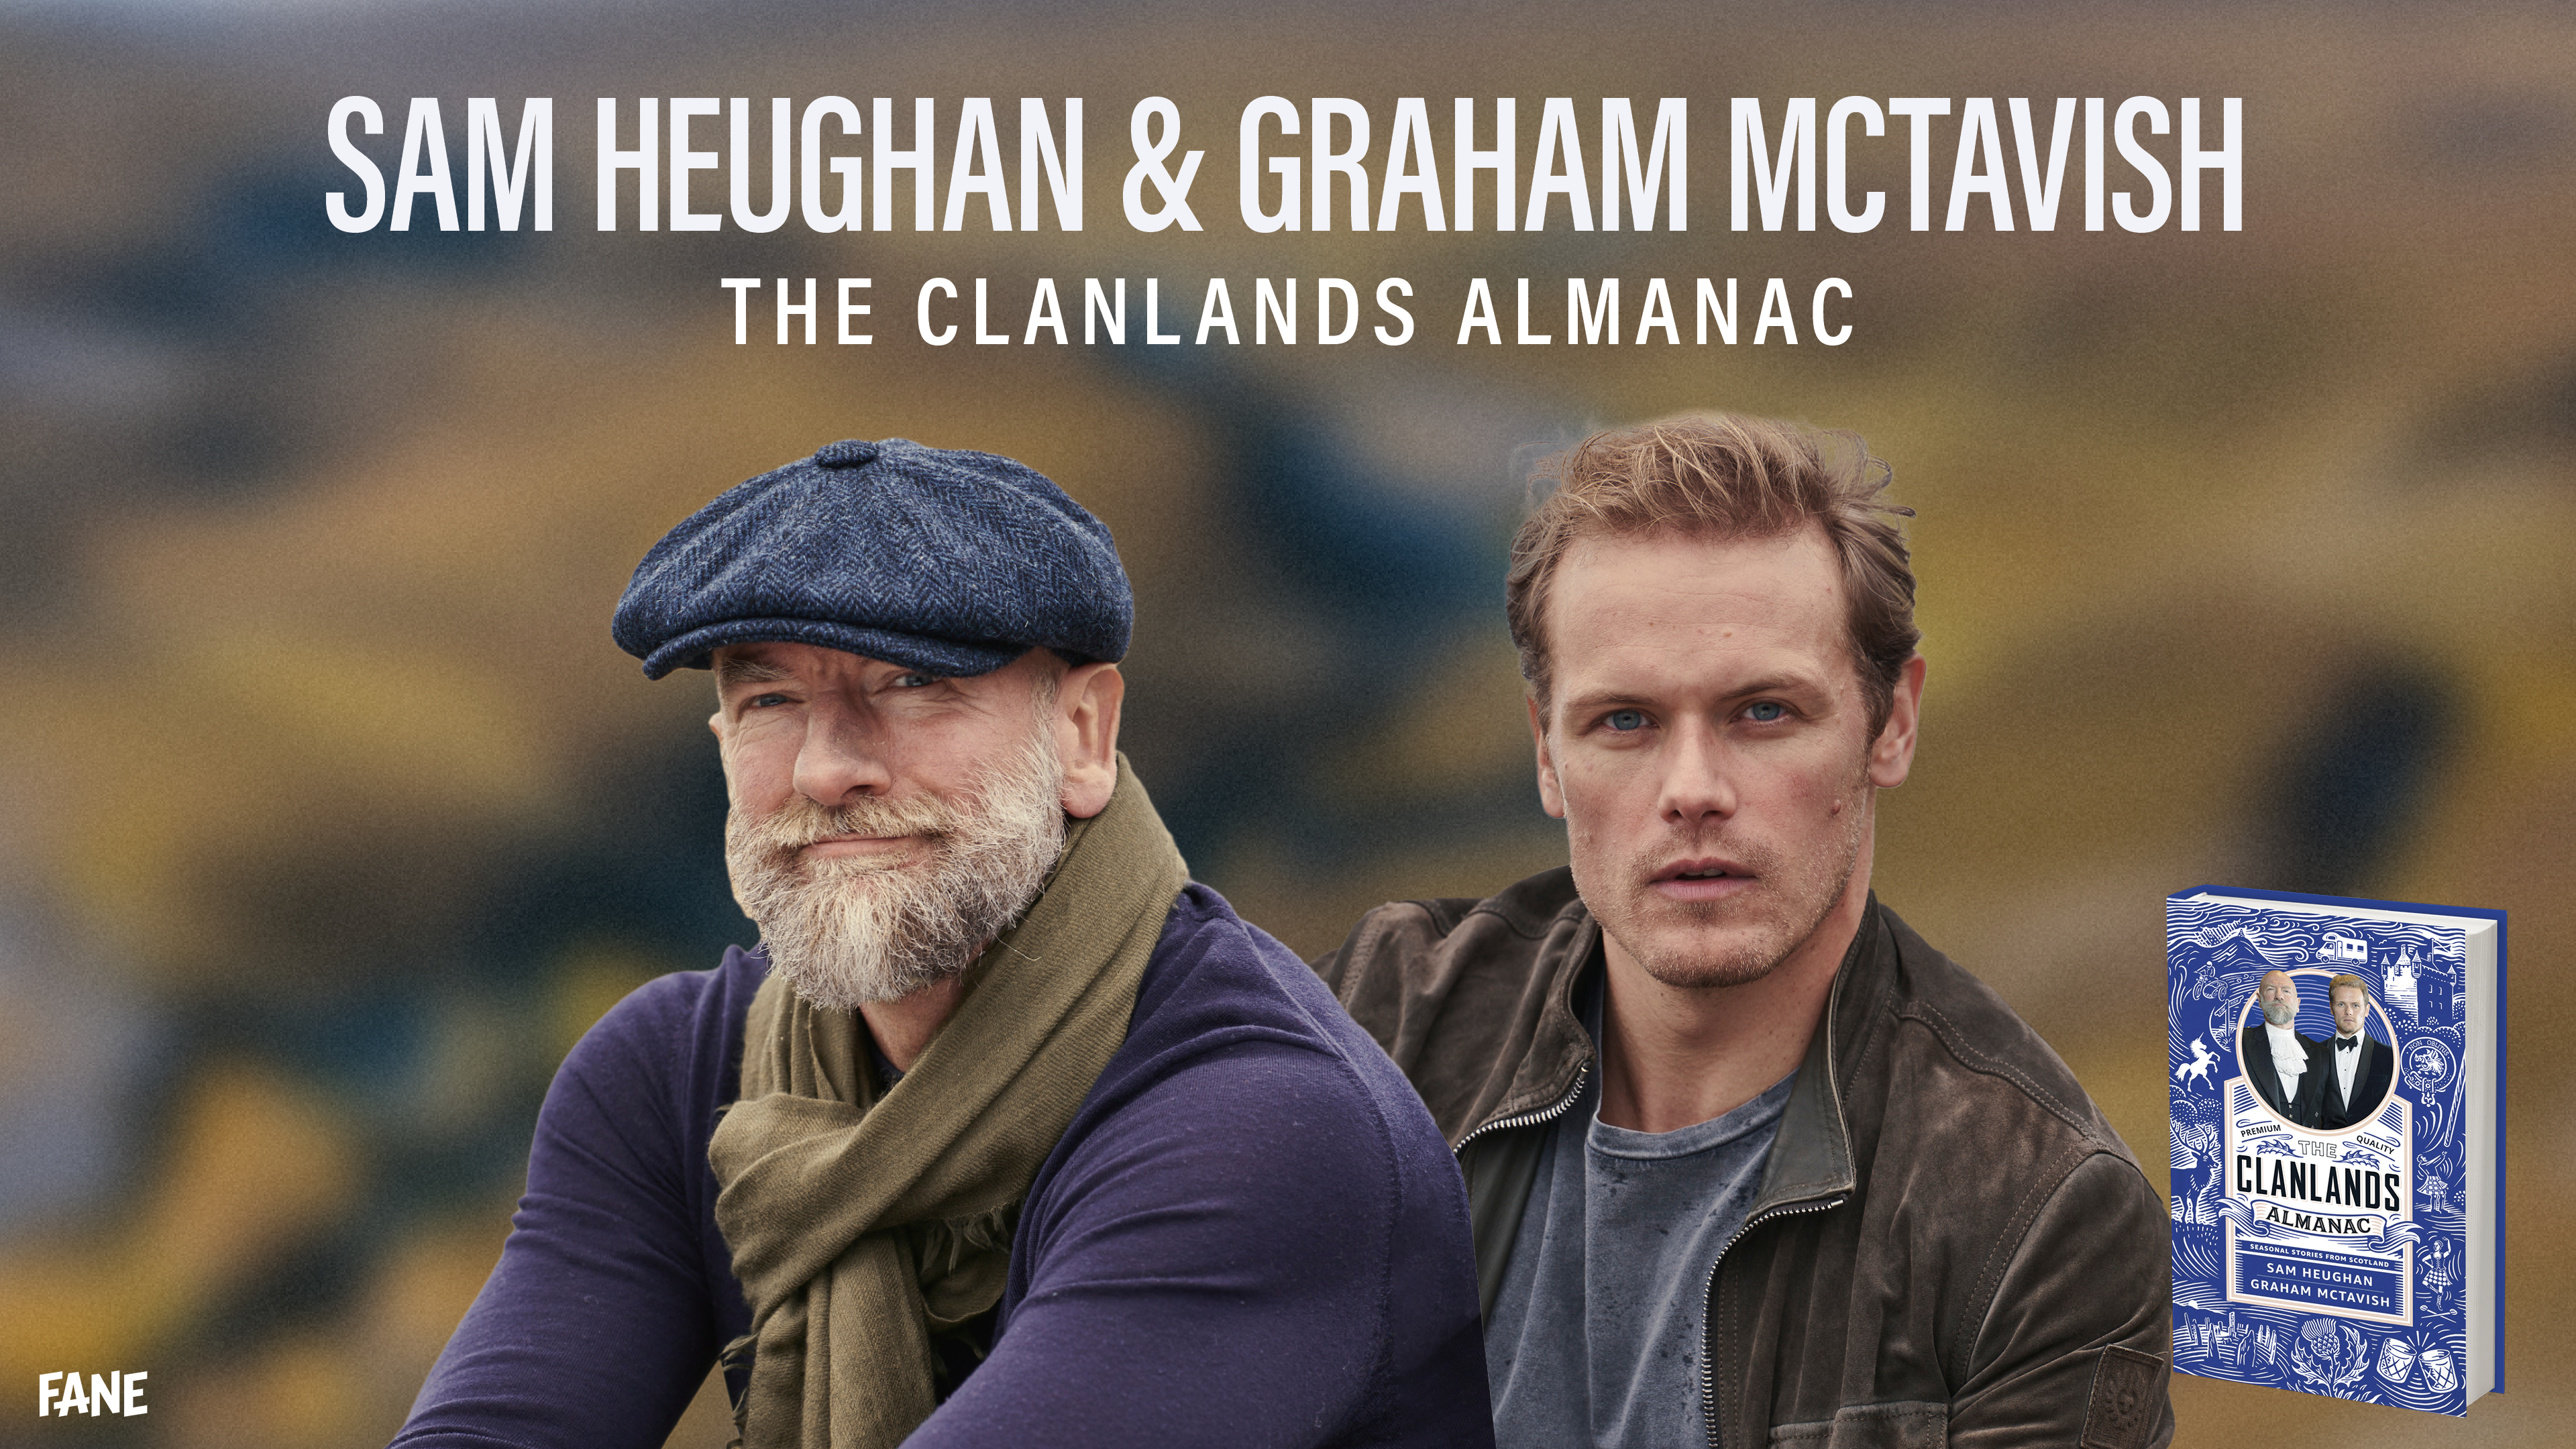 clanlands almanac